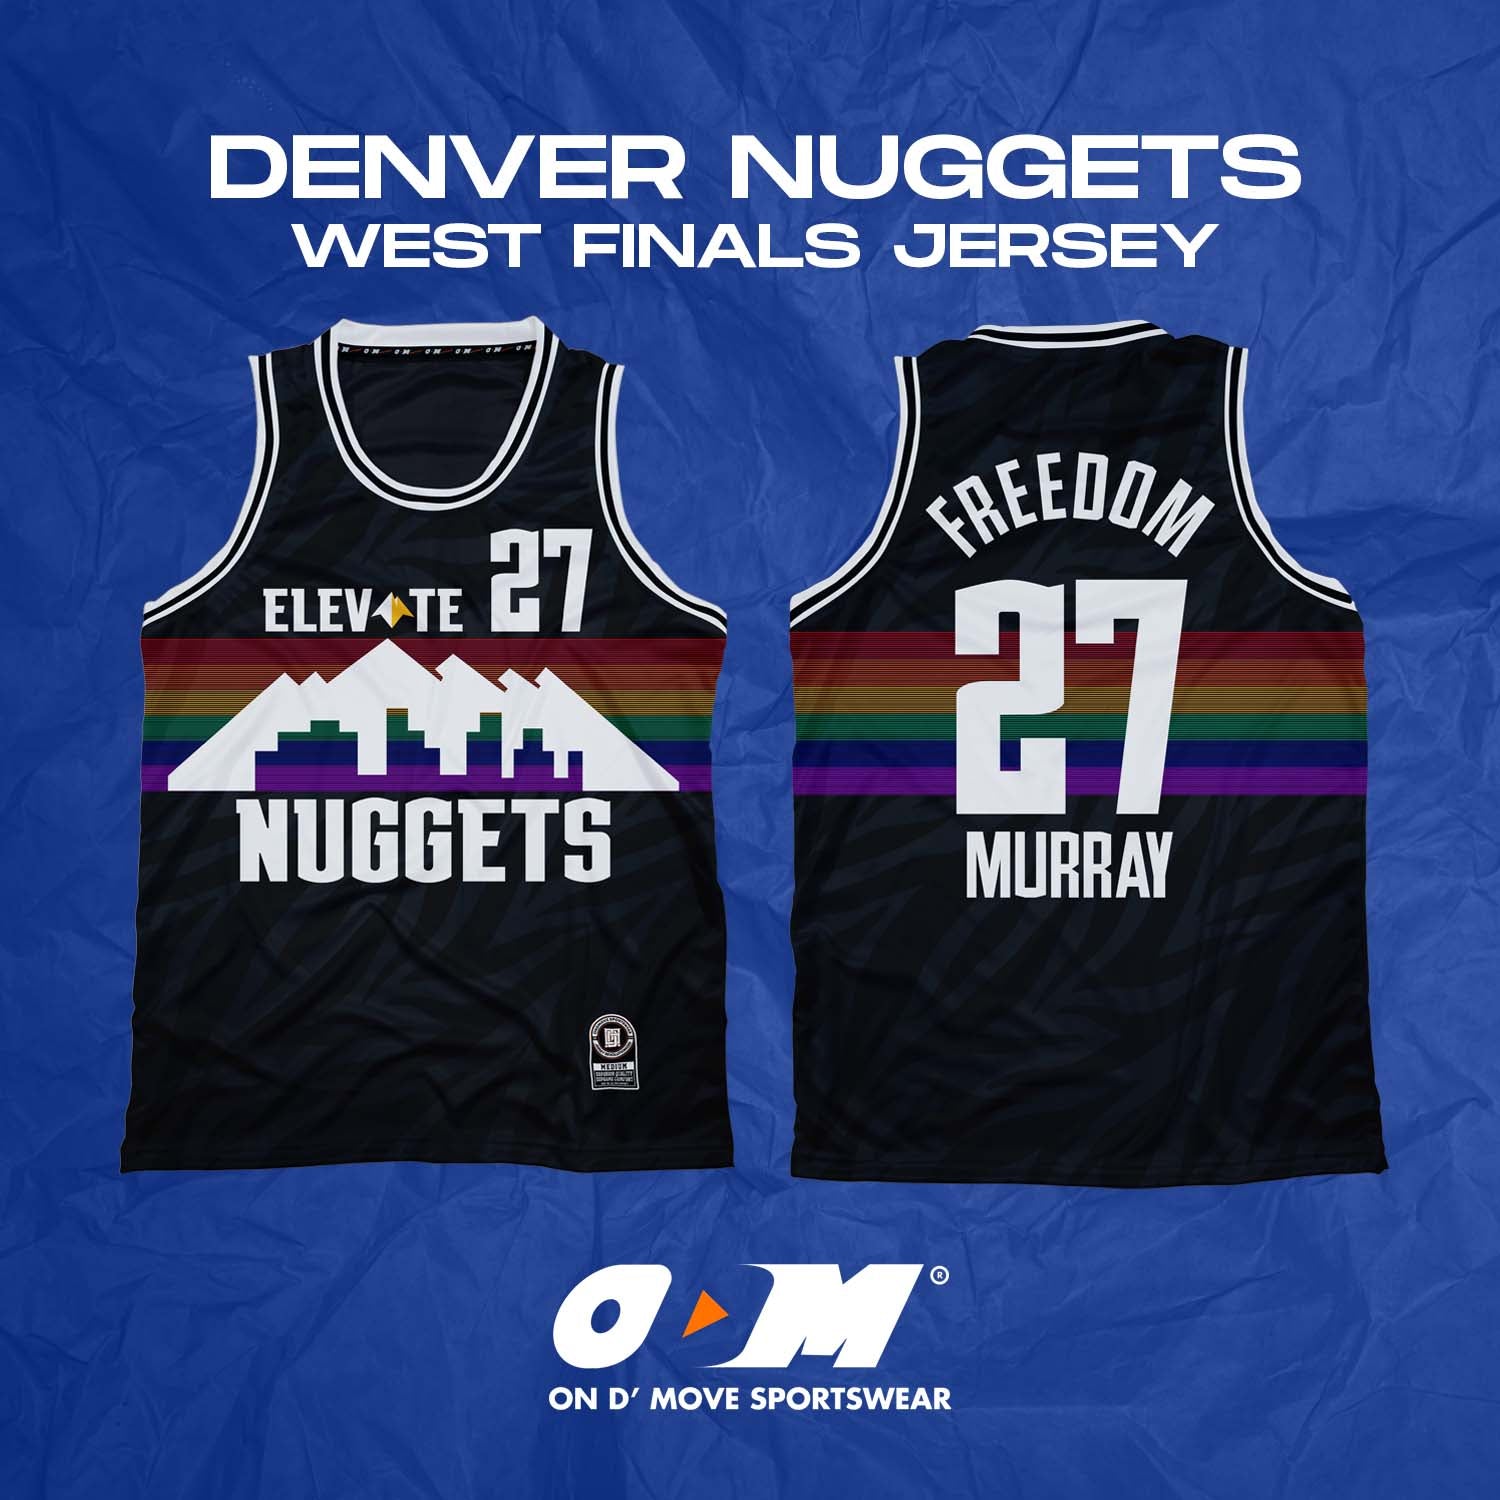 Denver Nuggets West Finals Jersey